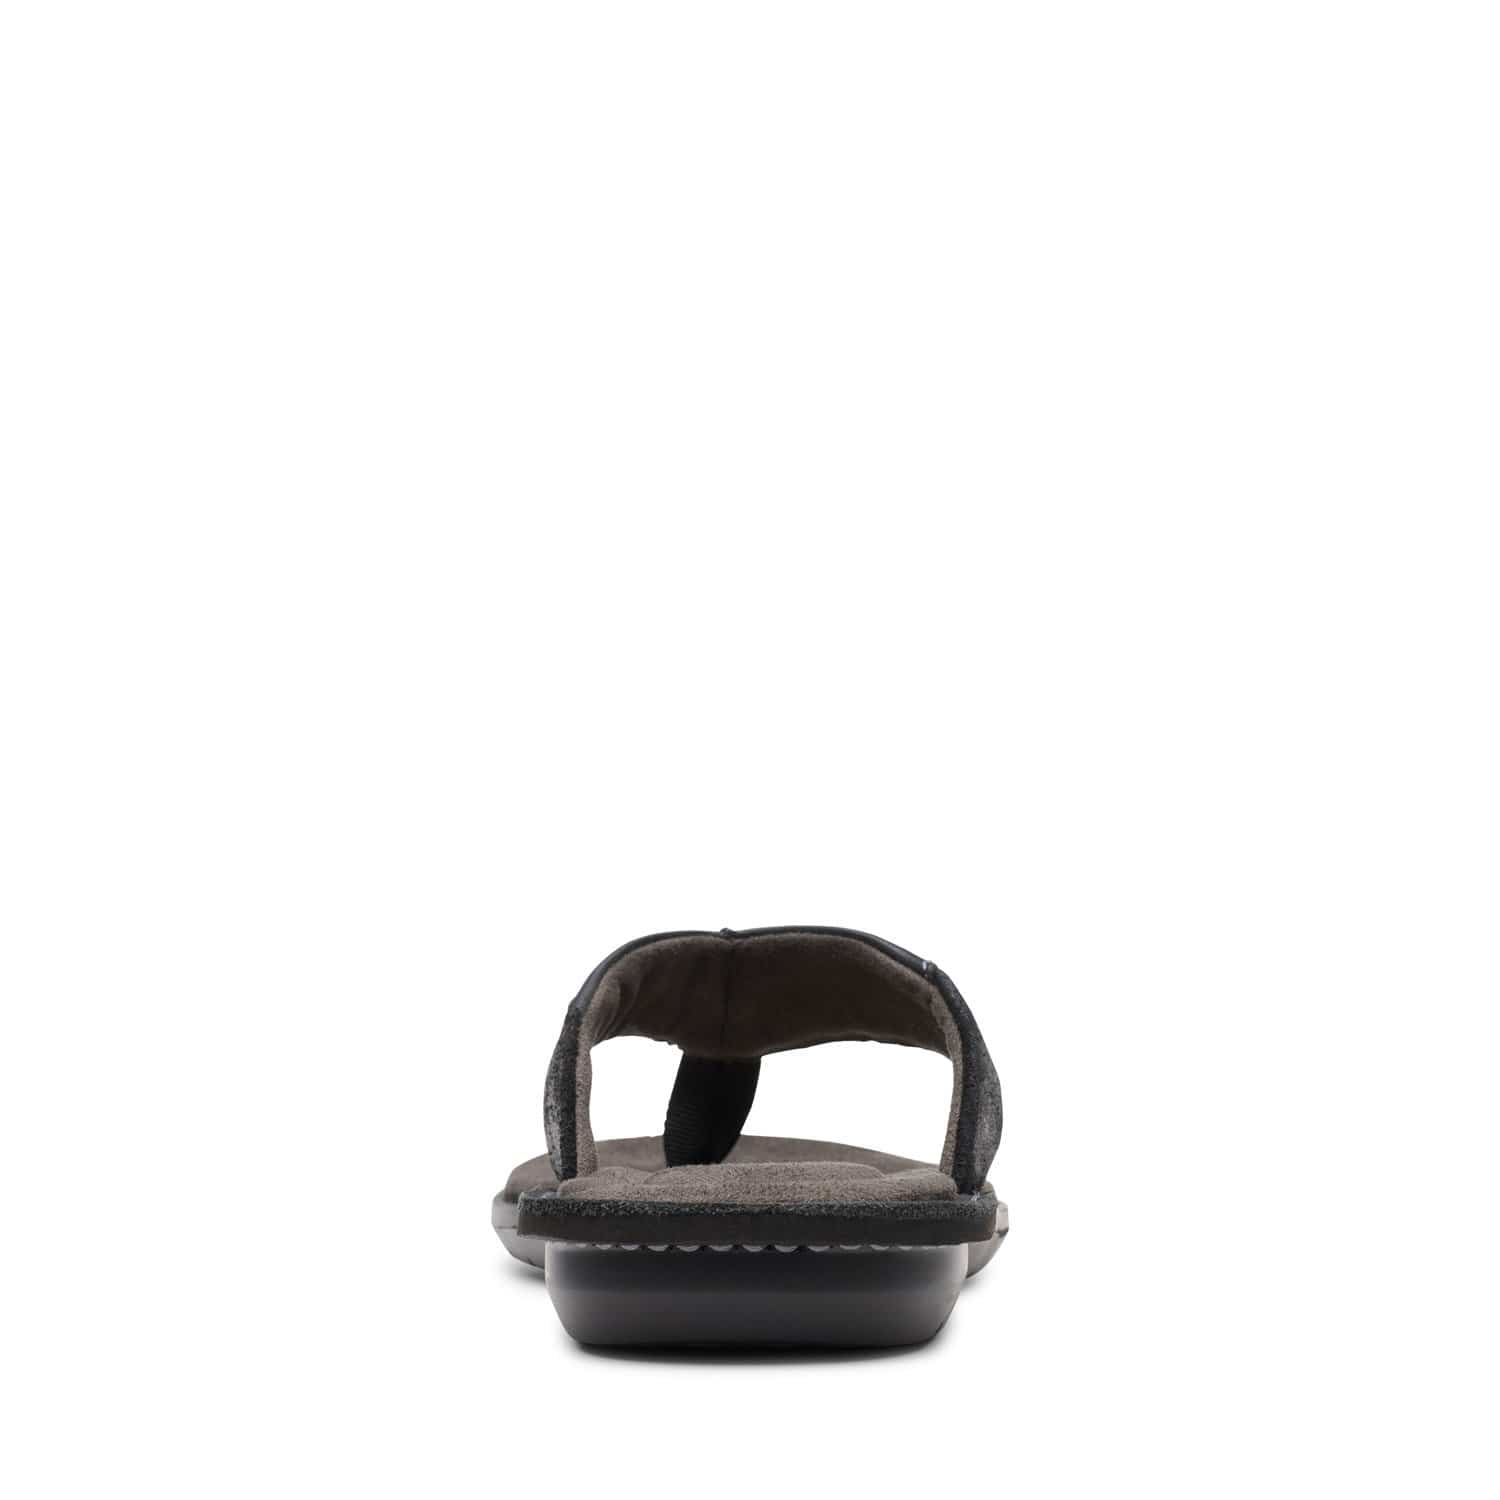 clarks-ellison-easy-sandals-black-leather-26147716-g-width-standard-fit